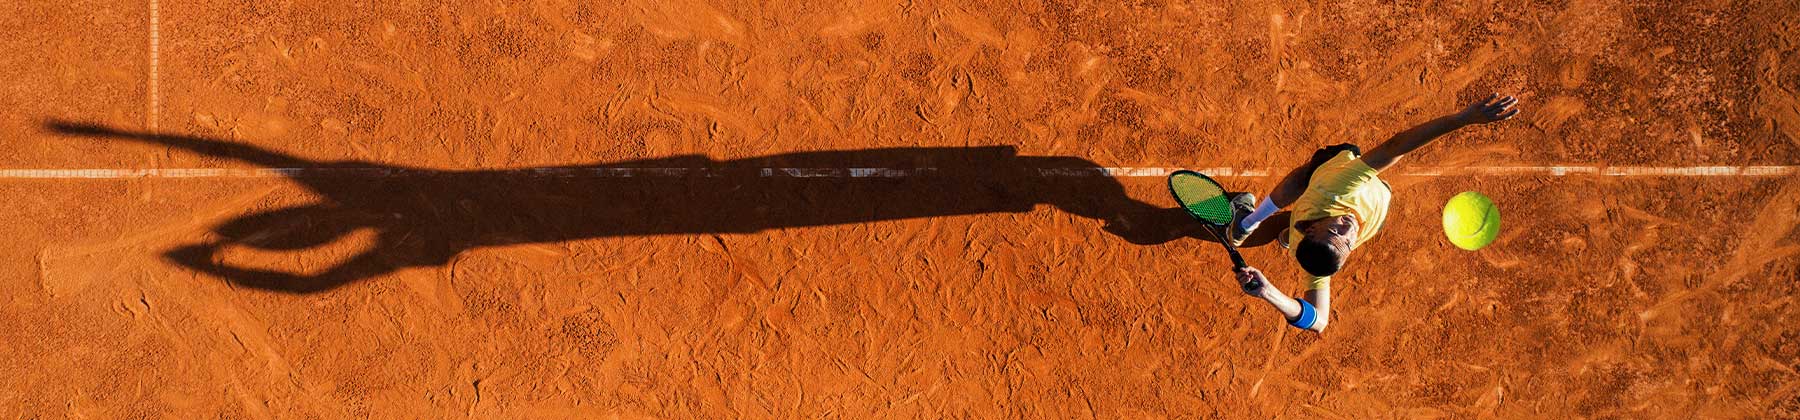 Foto aerae di un tennista che sta per servire su un campo di terra rossa.